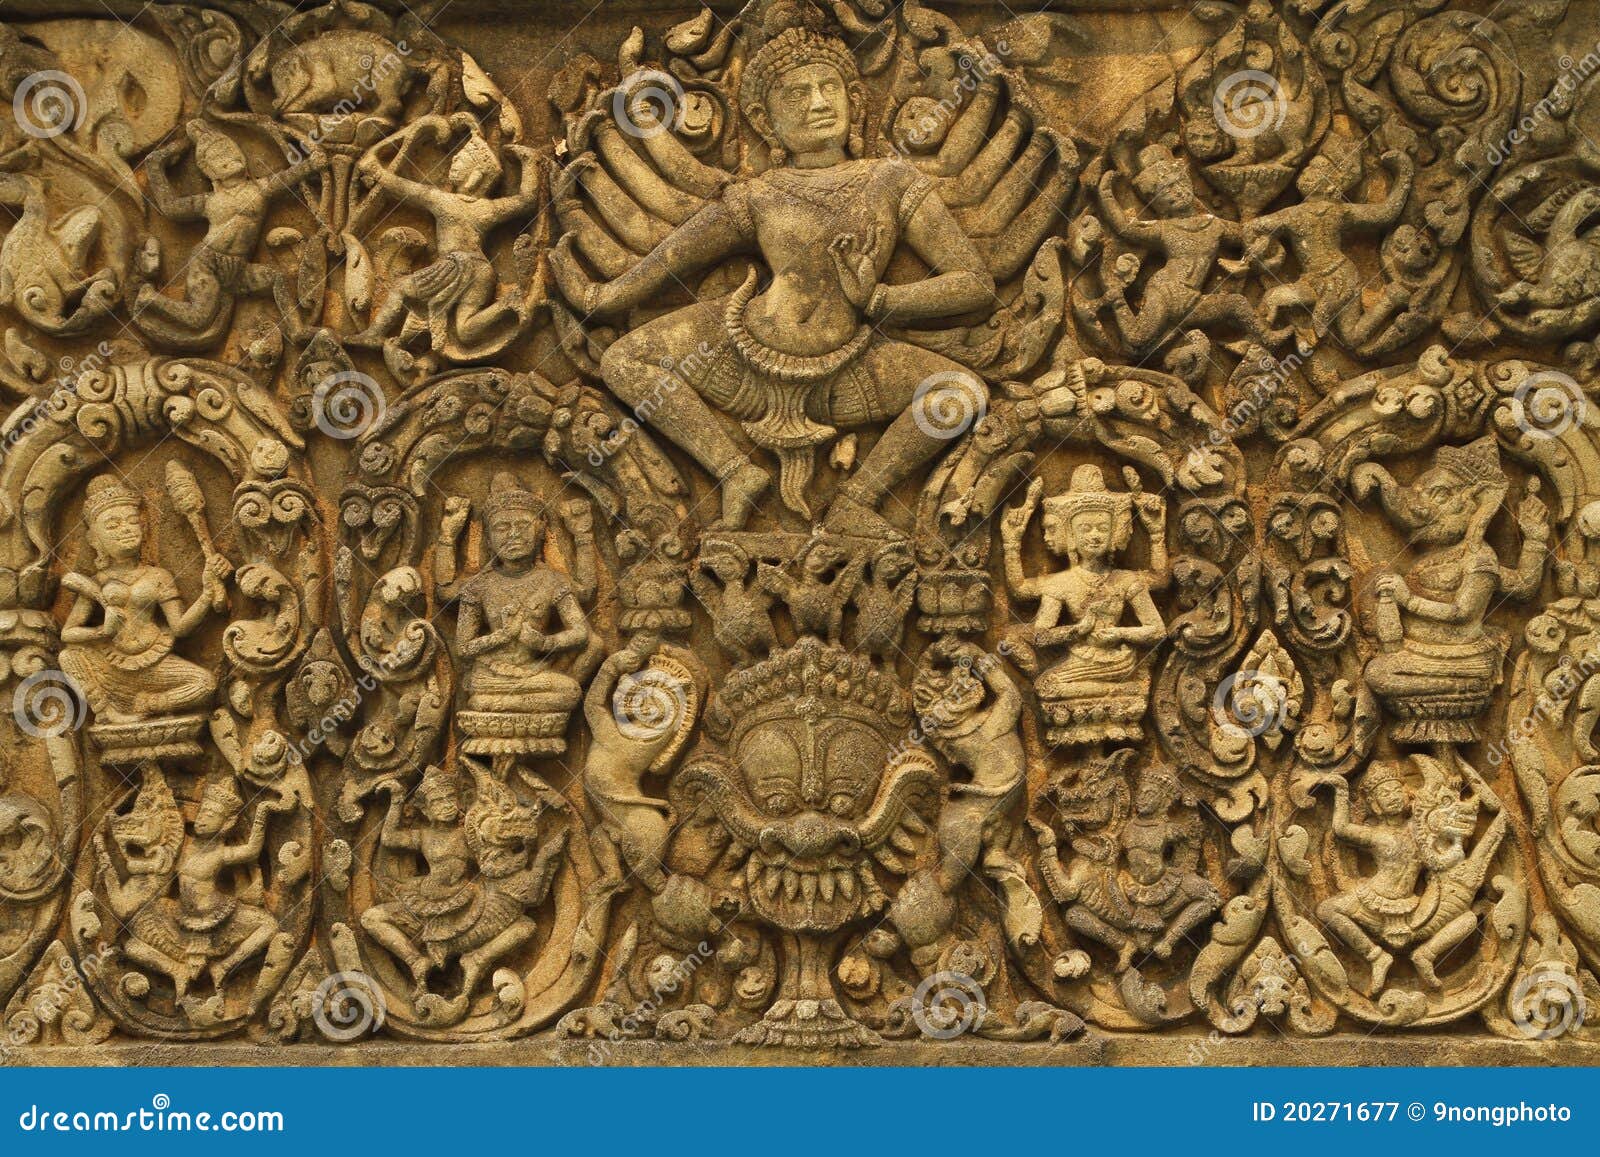 Angkor Wat Art of Ancient Hindu God Stone Stock Image - Image of ...